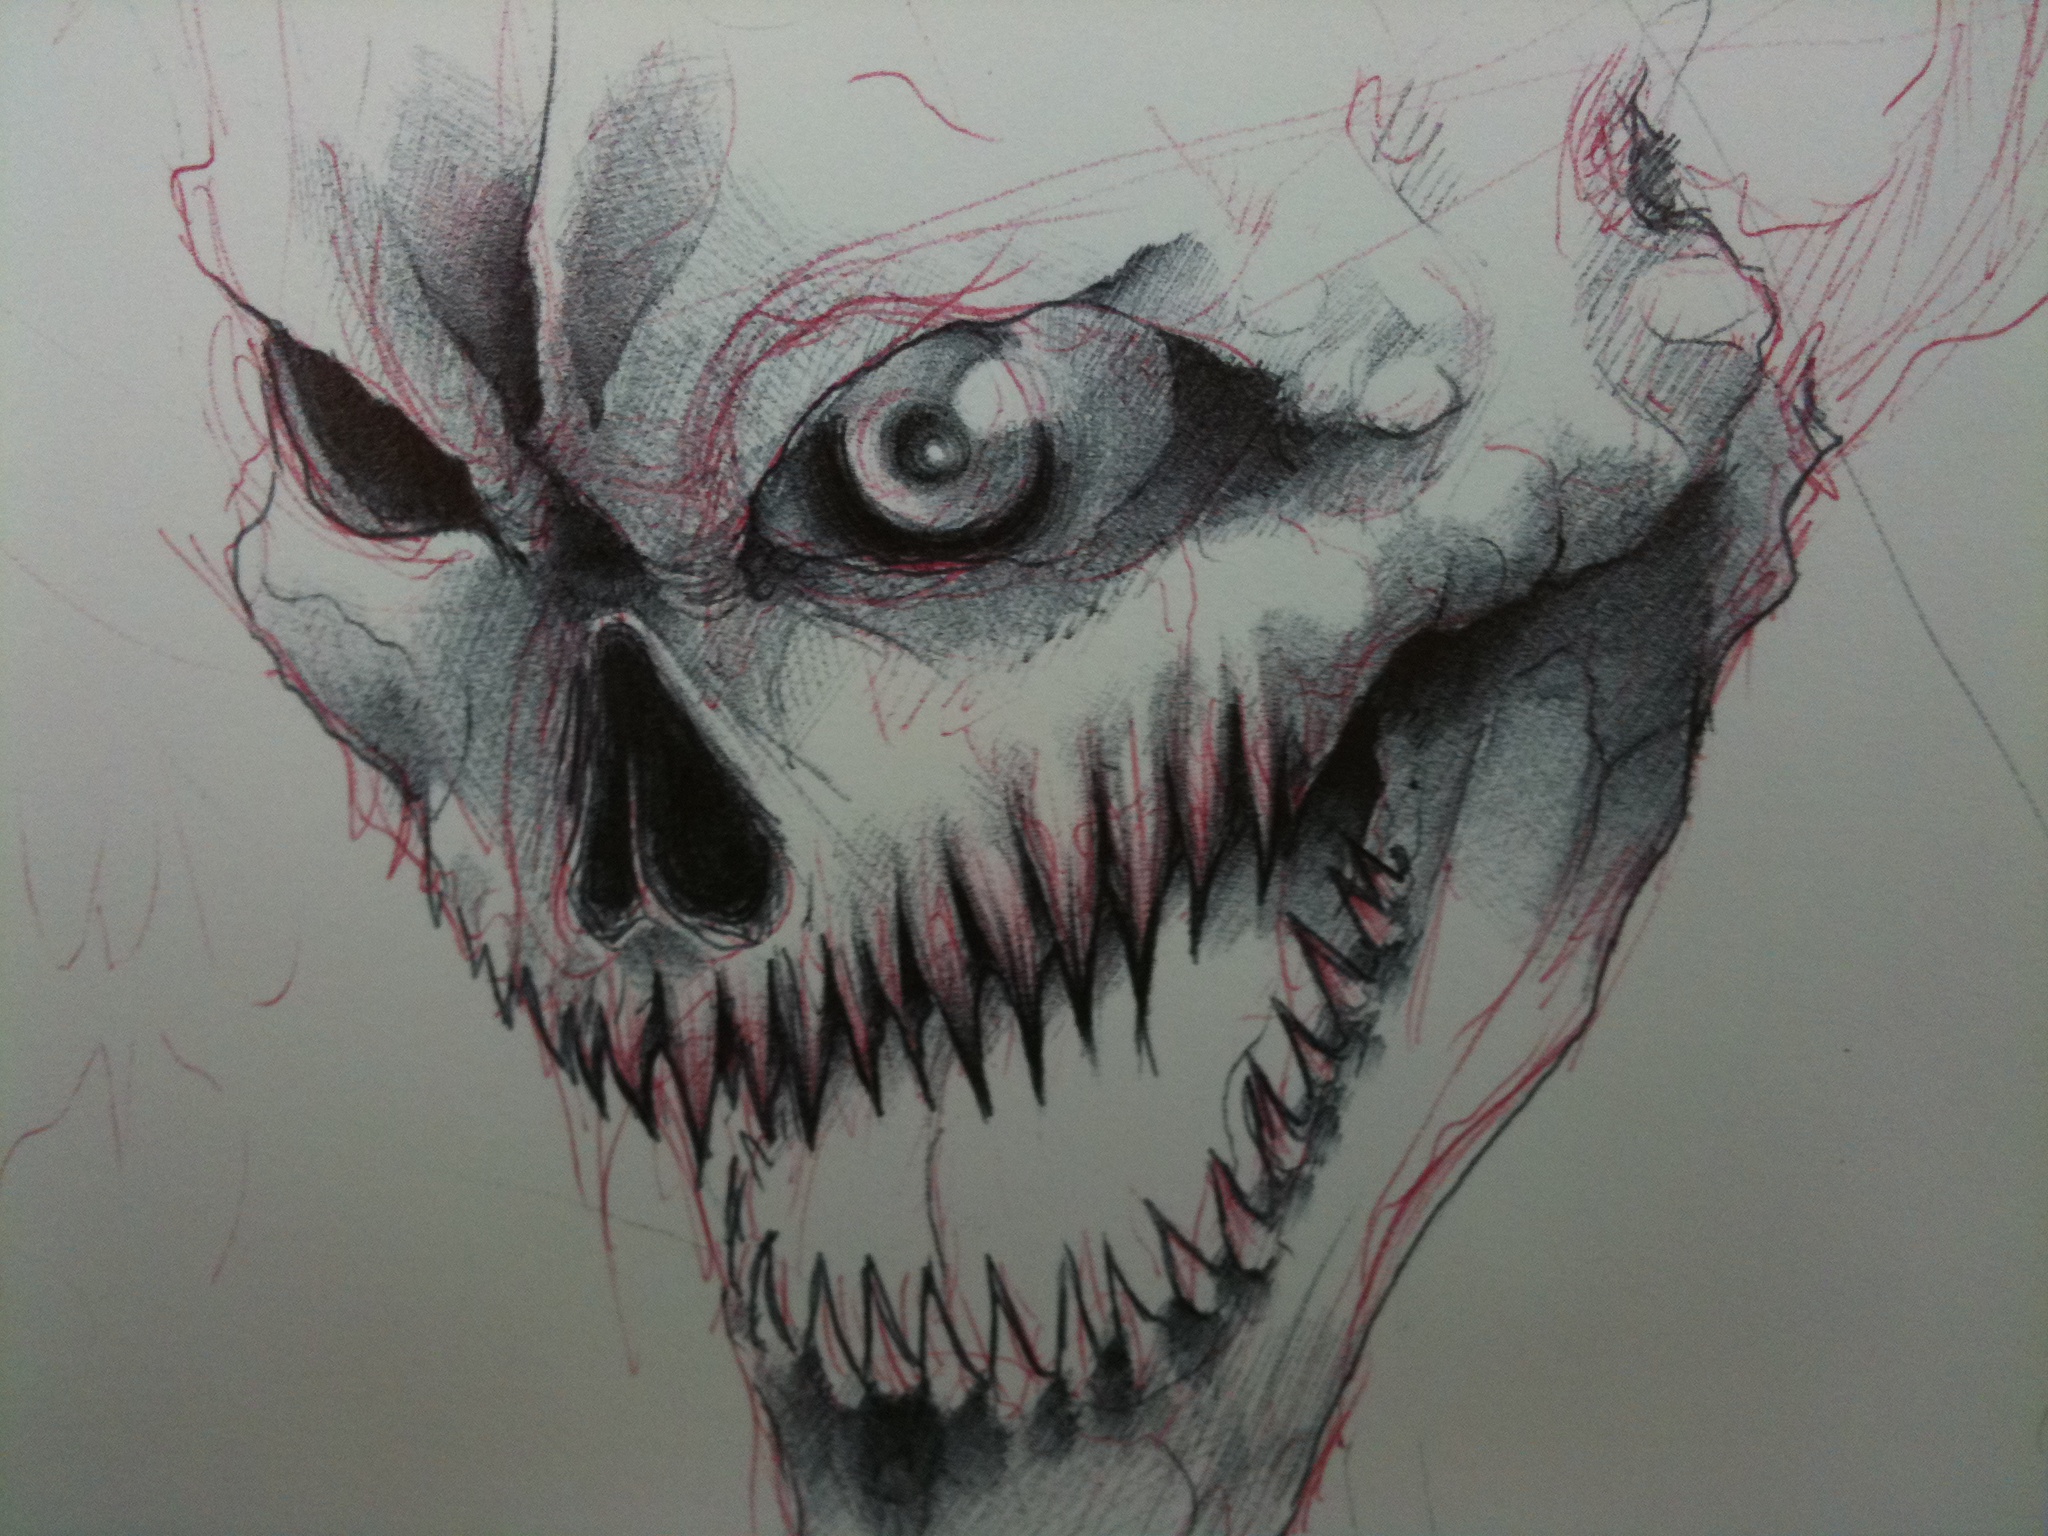 evil skull by shin0den on DeviantArt